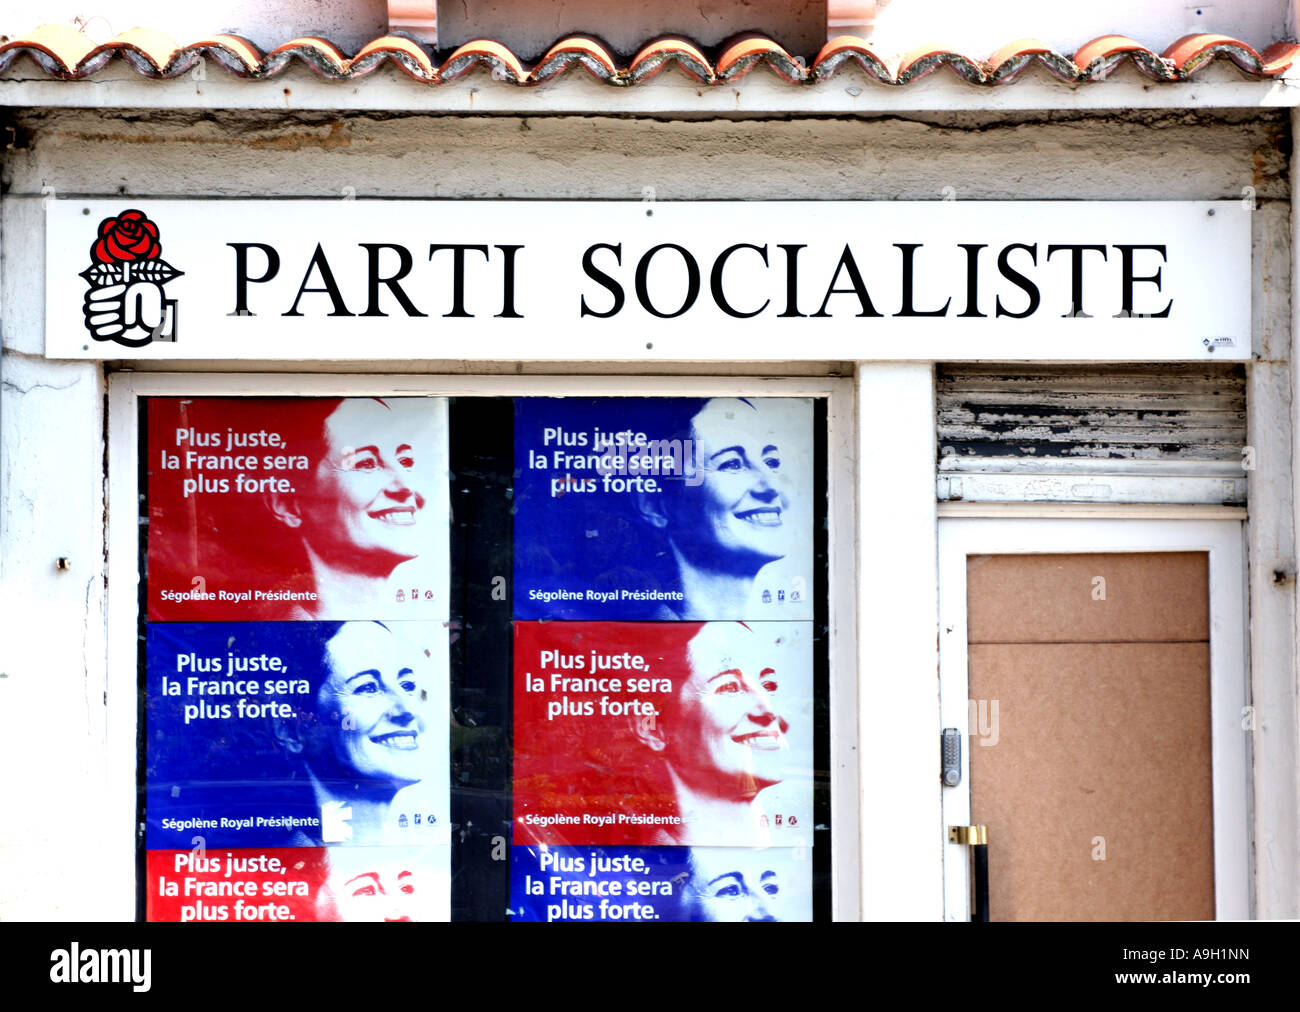 Ville bureau local Oloron de Ségolène Royal parti socialiste français France 2007 au cours de l'élection présidentielle Banque D'Images